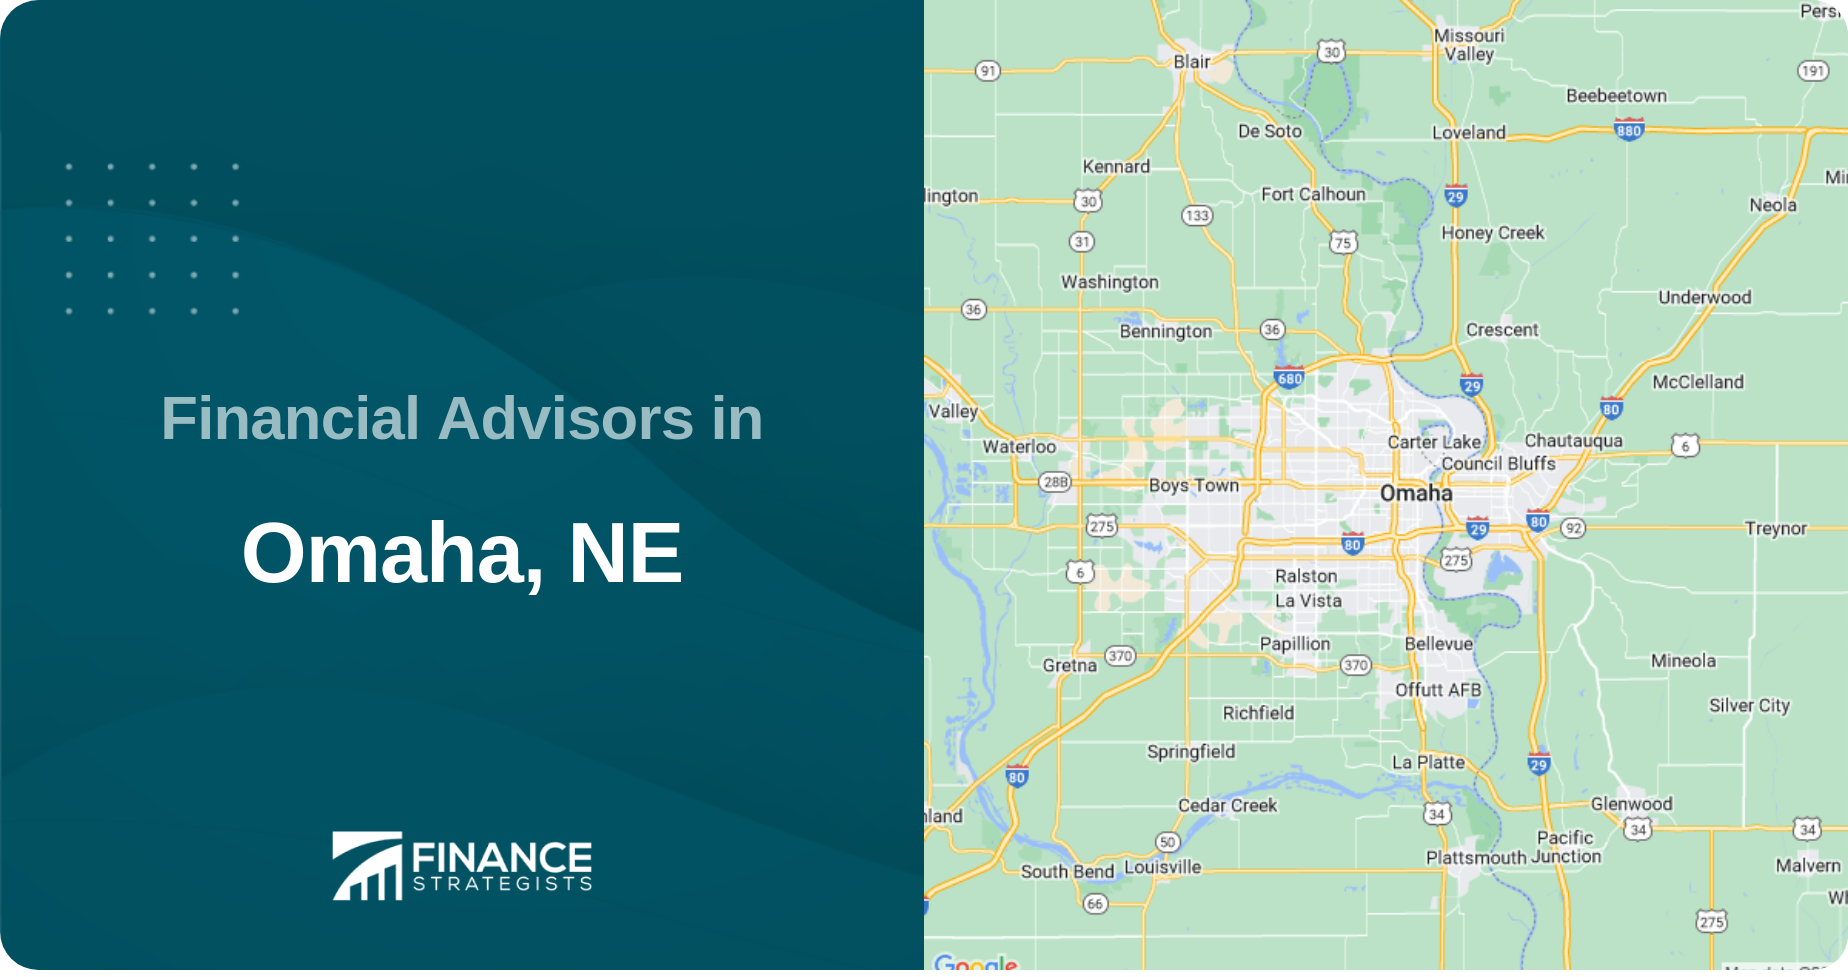 Financial Advisors in Omaha, NE